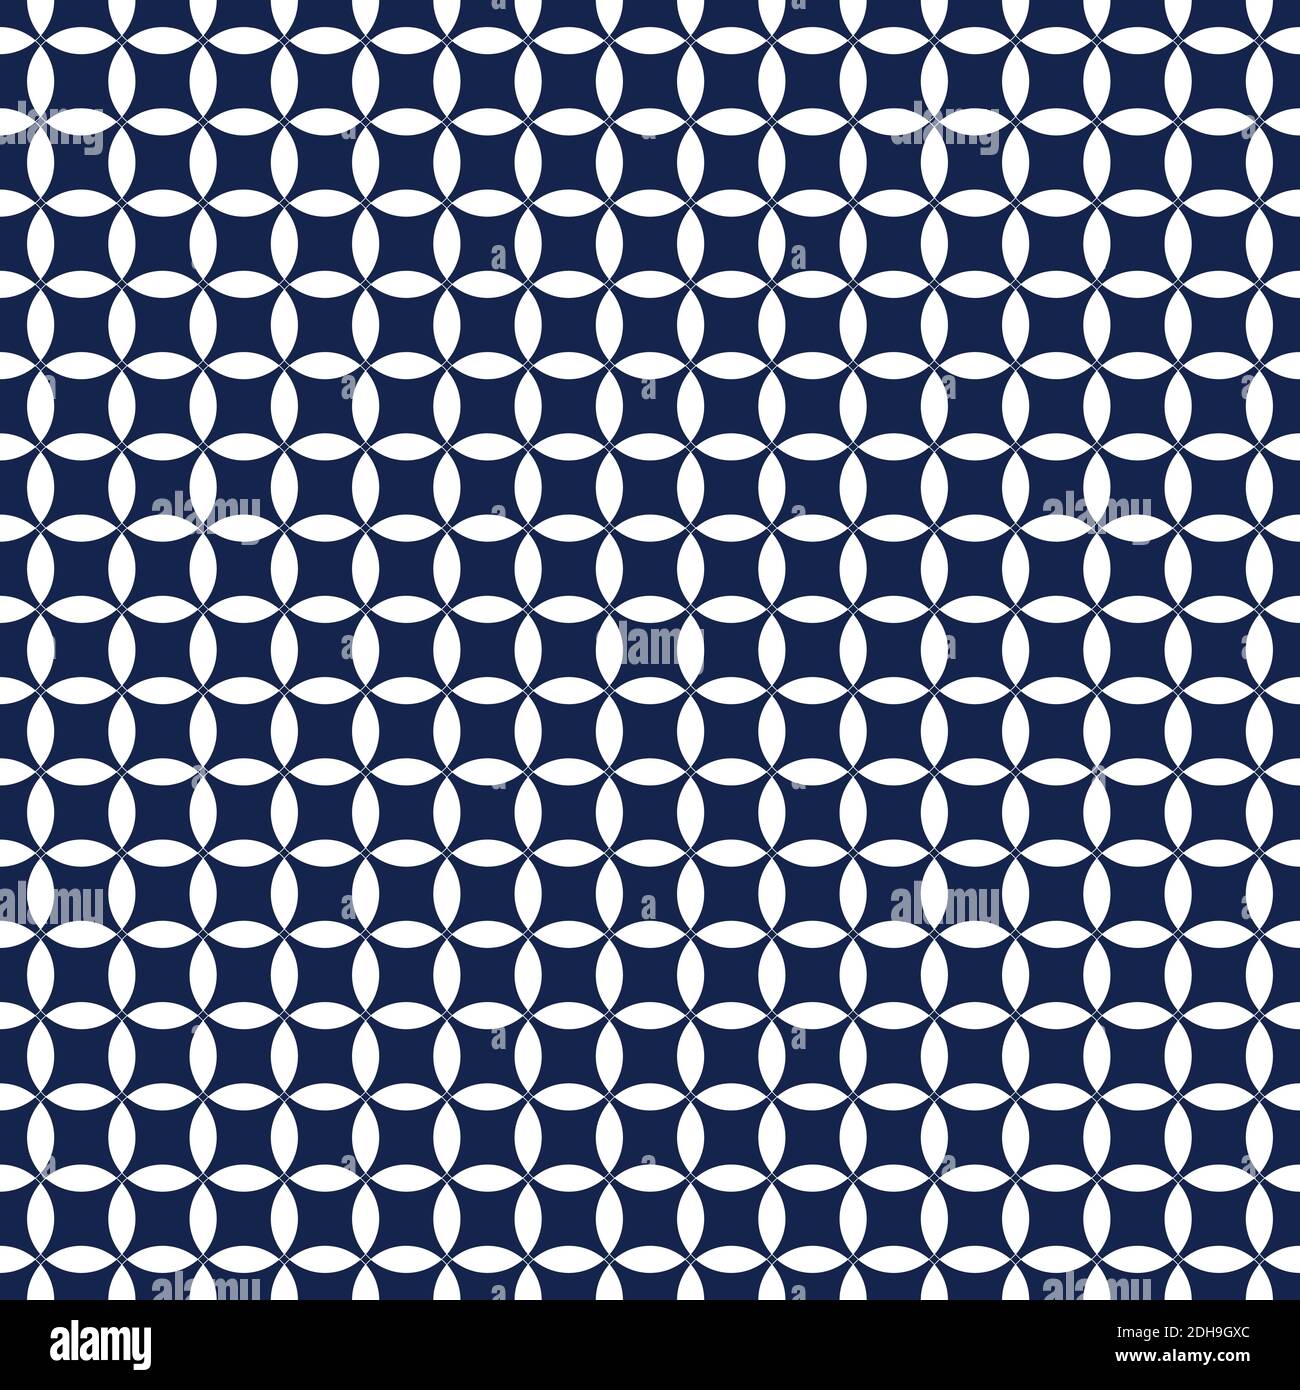 Asiatische nahtlose Kreise Muster. Japanisches blaues Muster. Ornament Vektor Illustration. Vektorgrafik Stock Vektor